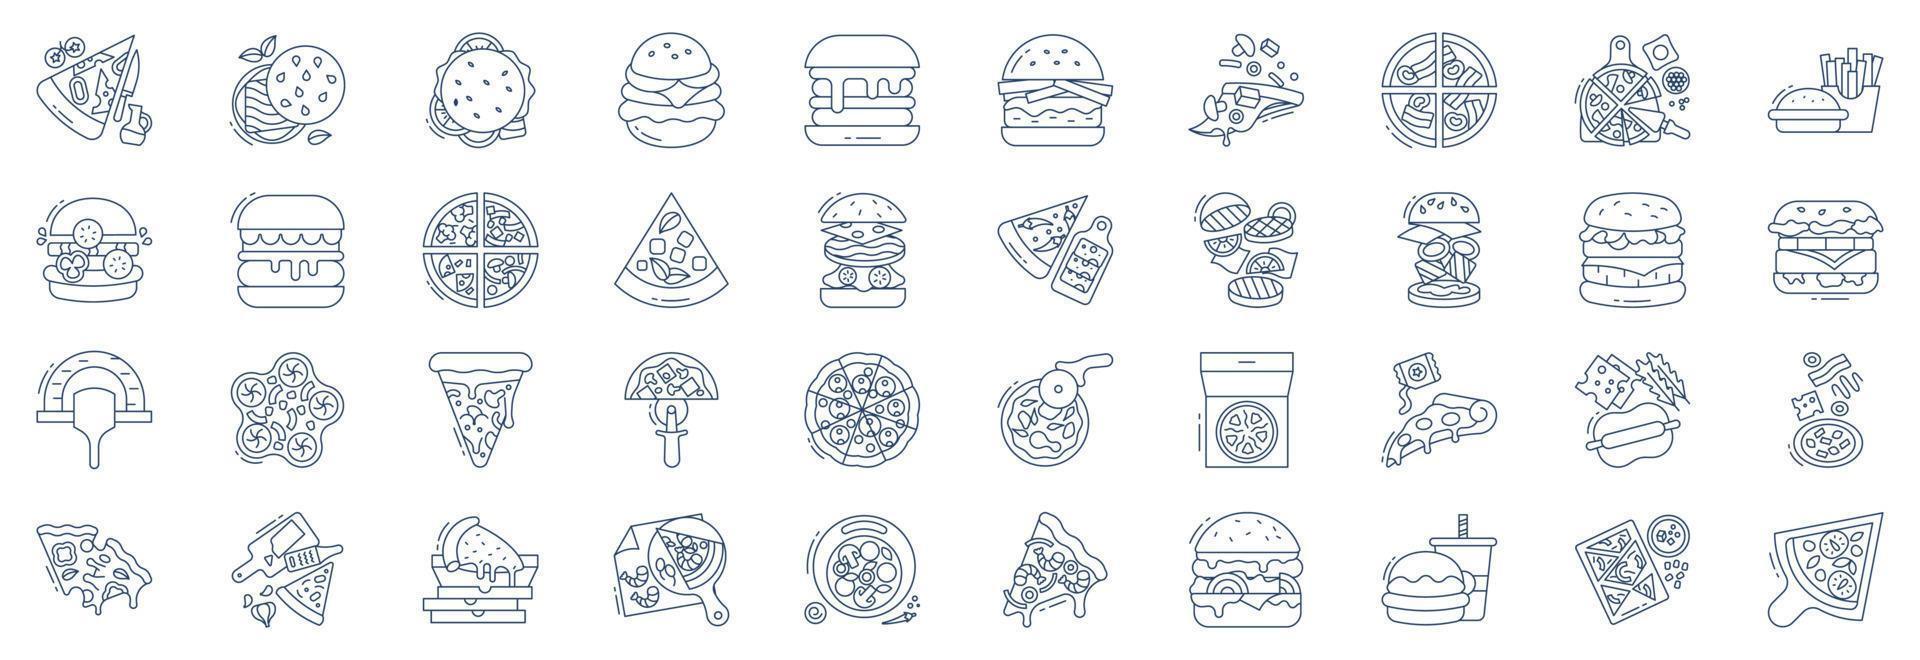 verzameling van pictogrammen verwant naar pizza en hamburger, inclusief pictogrammen Leuk vinden pizza, Patat, hamburger, monos en meer. vector illustraties, pixel perfect reeks